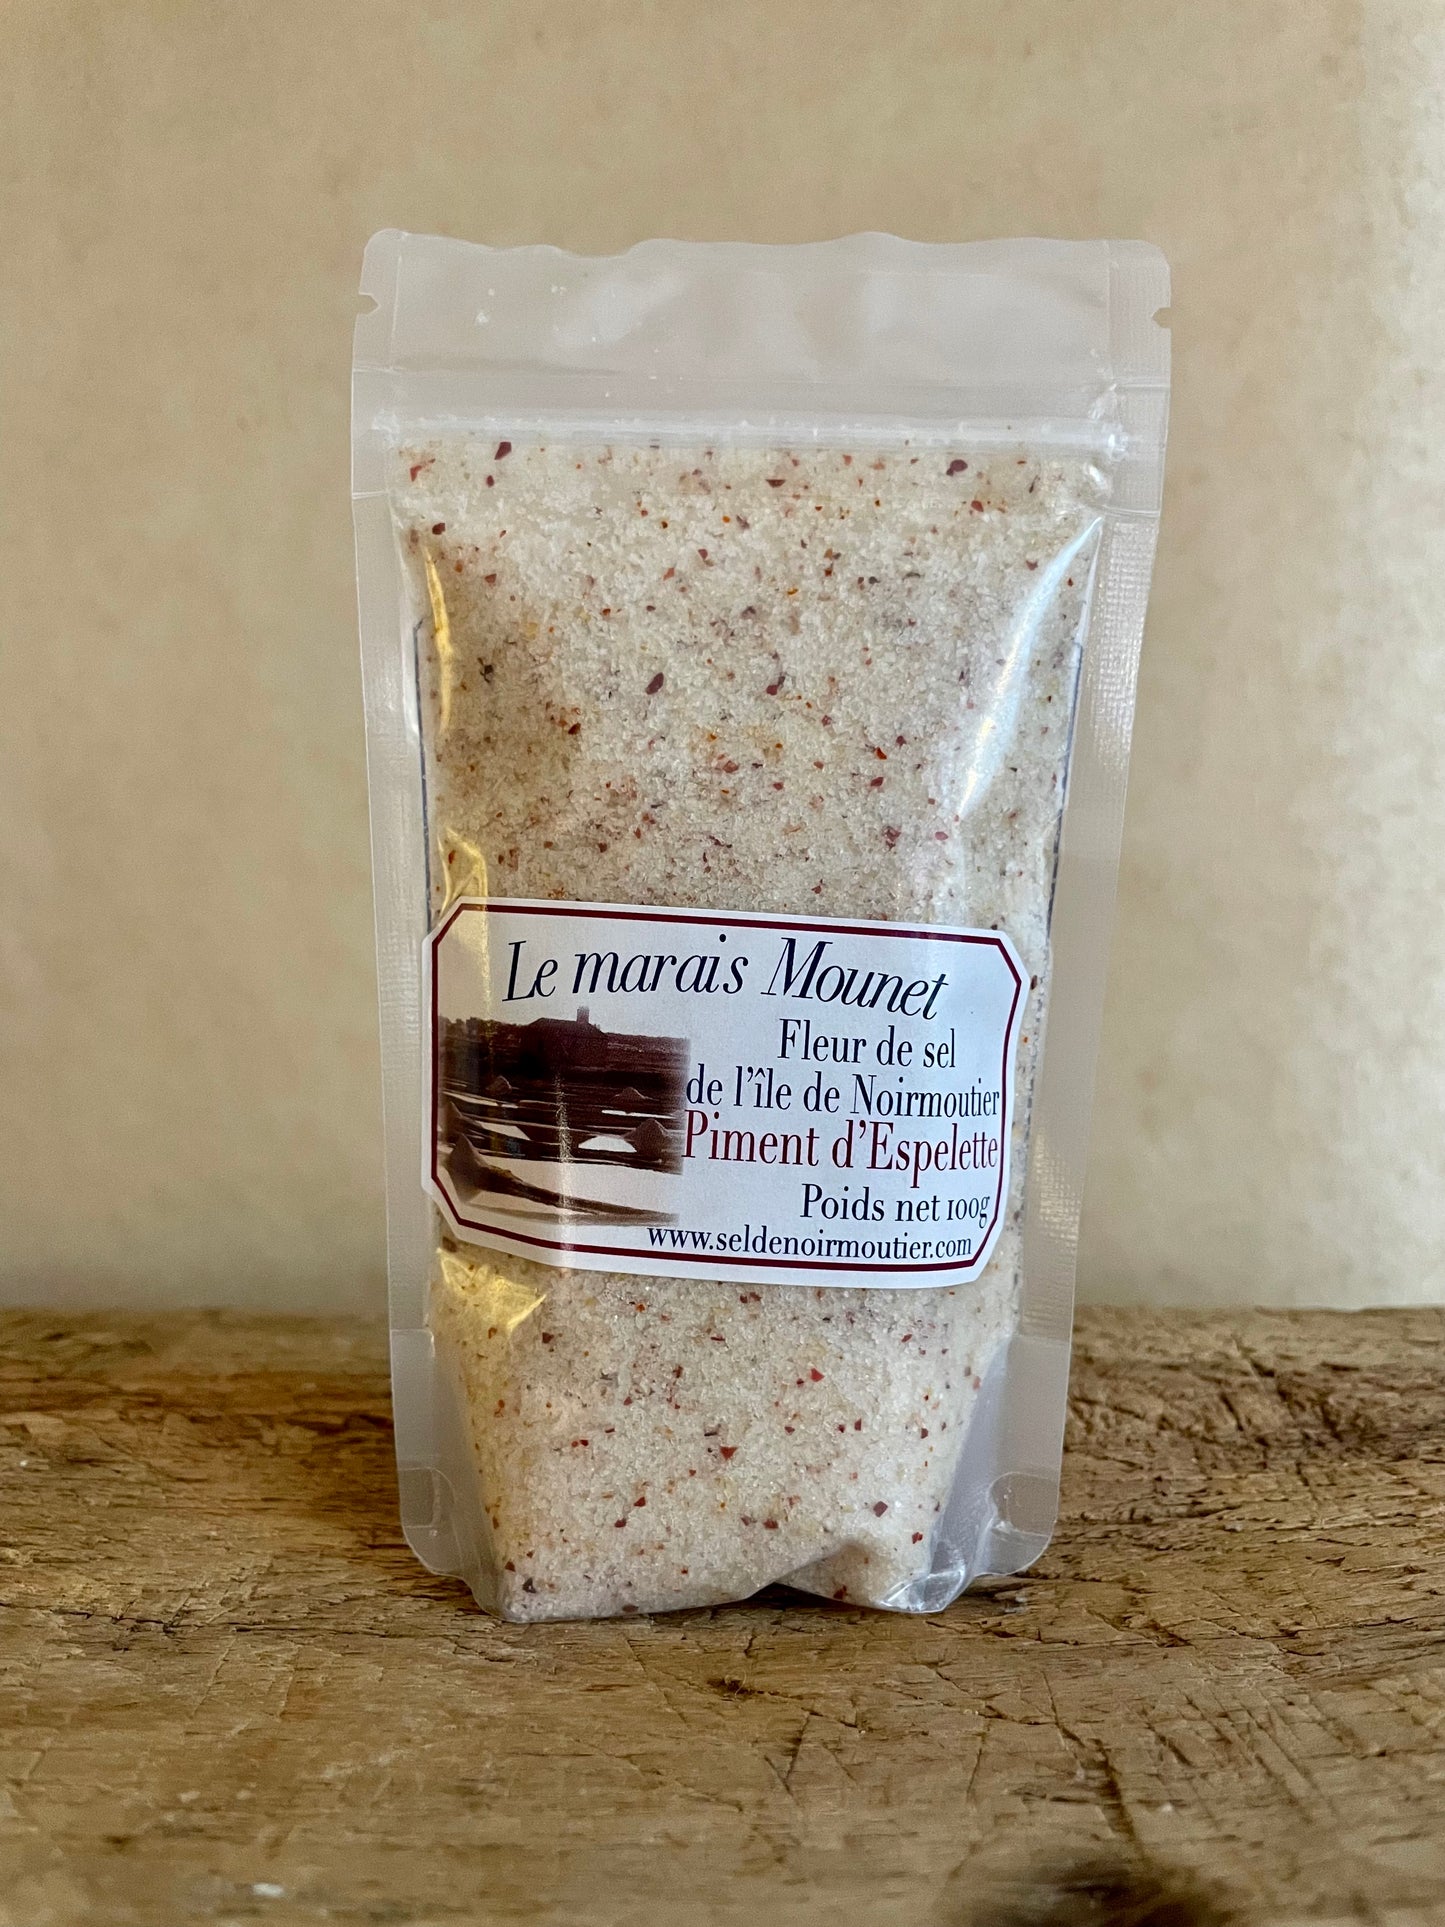 Le Marais Mounet Fleur de sel "Piment d'Espelette" 100 g